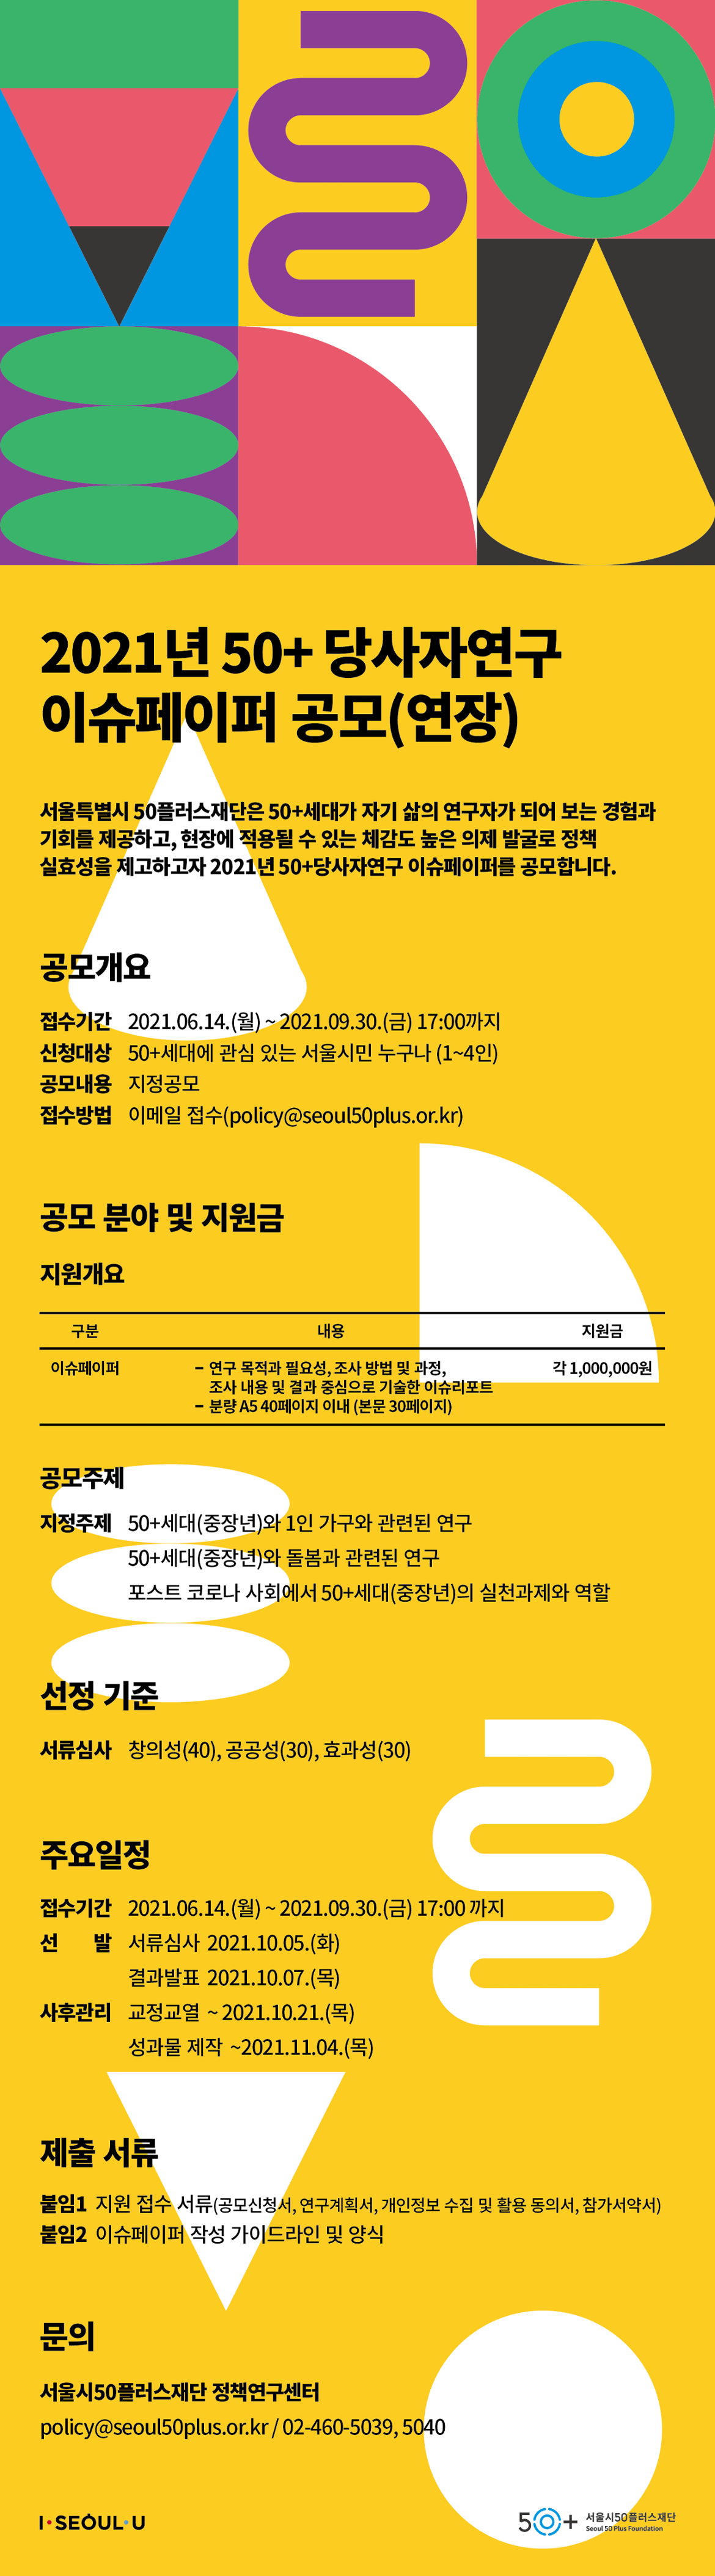 서울시50플러스재단_당사자연구_웹자보(연장).png